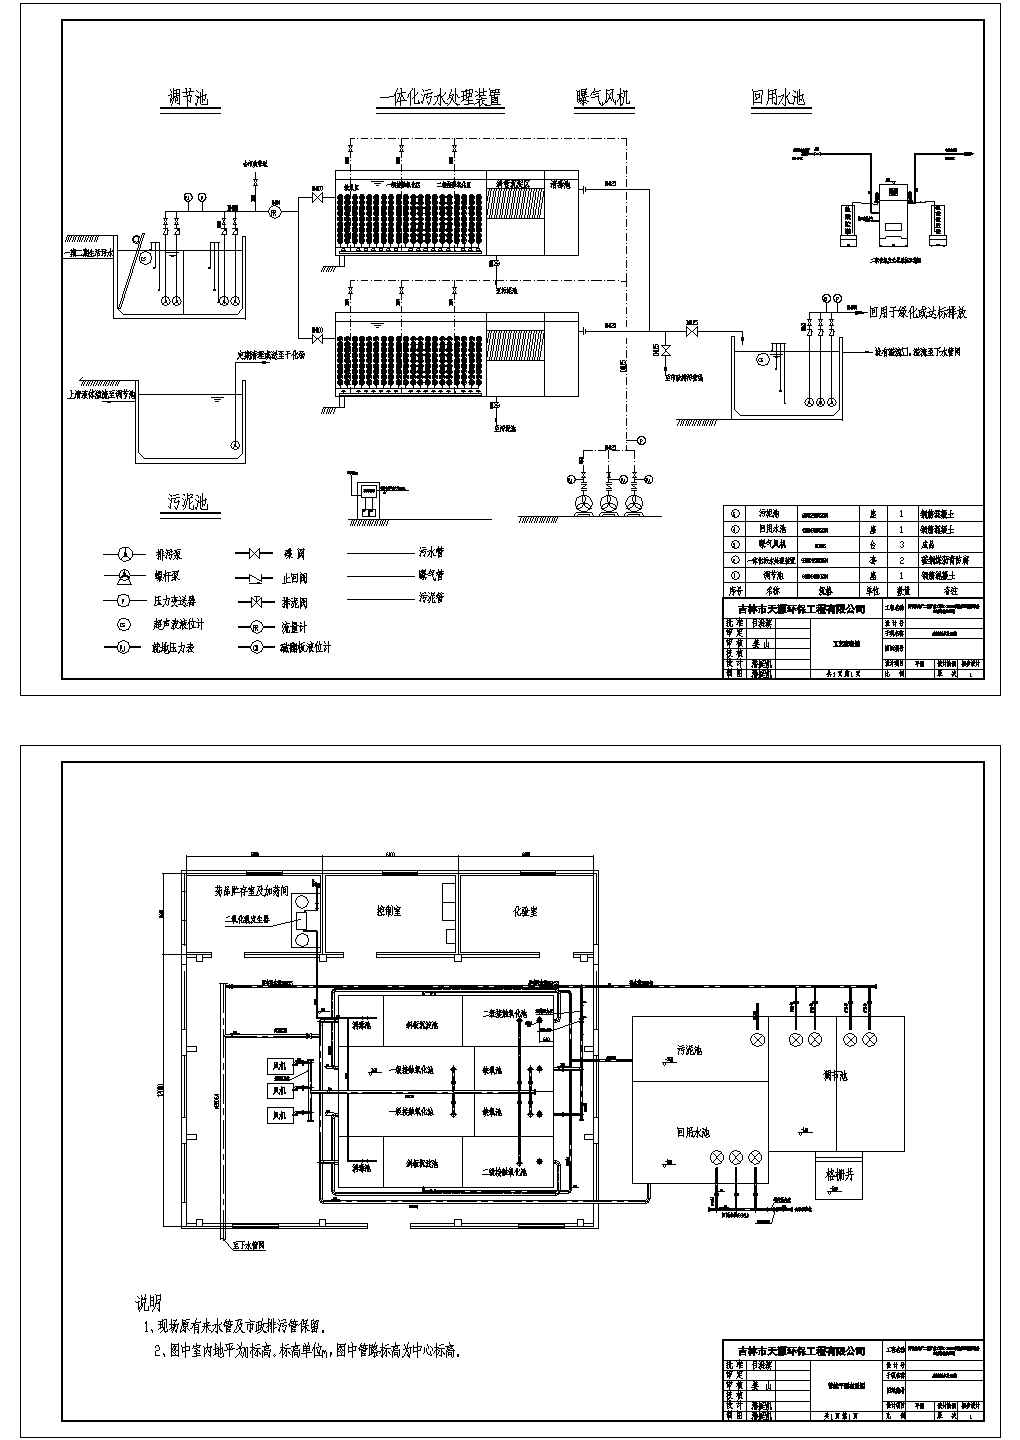 四平热电厂污水处理工艺图及平面布置图